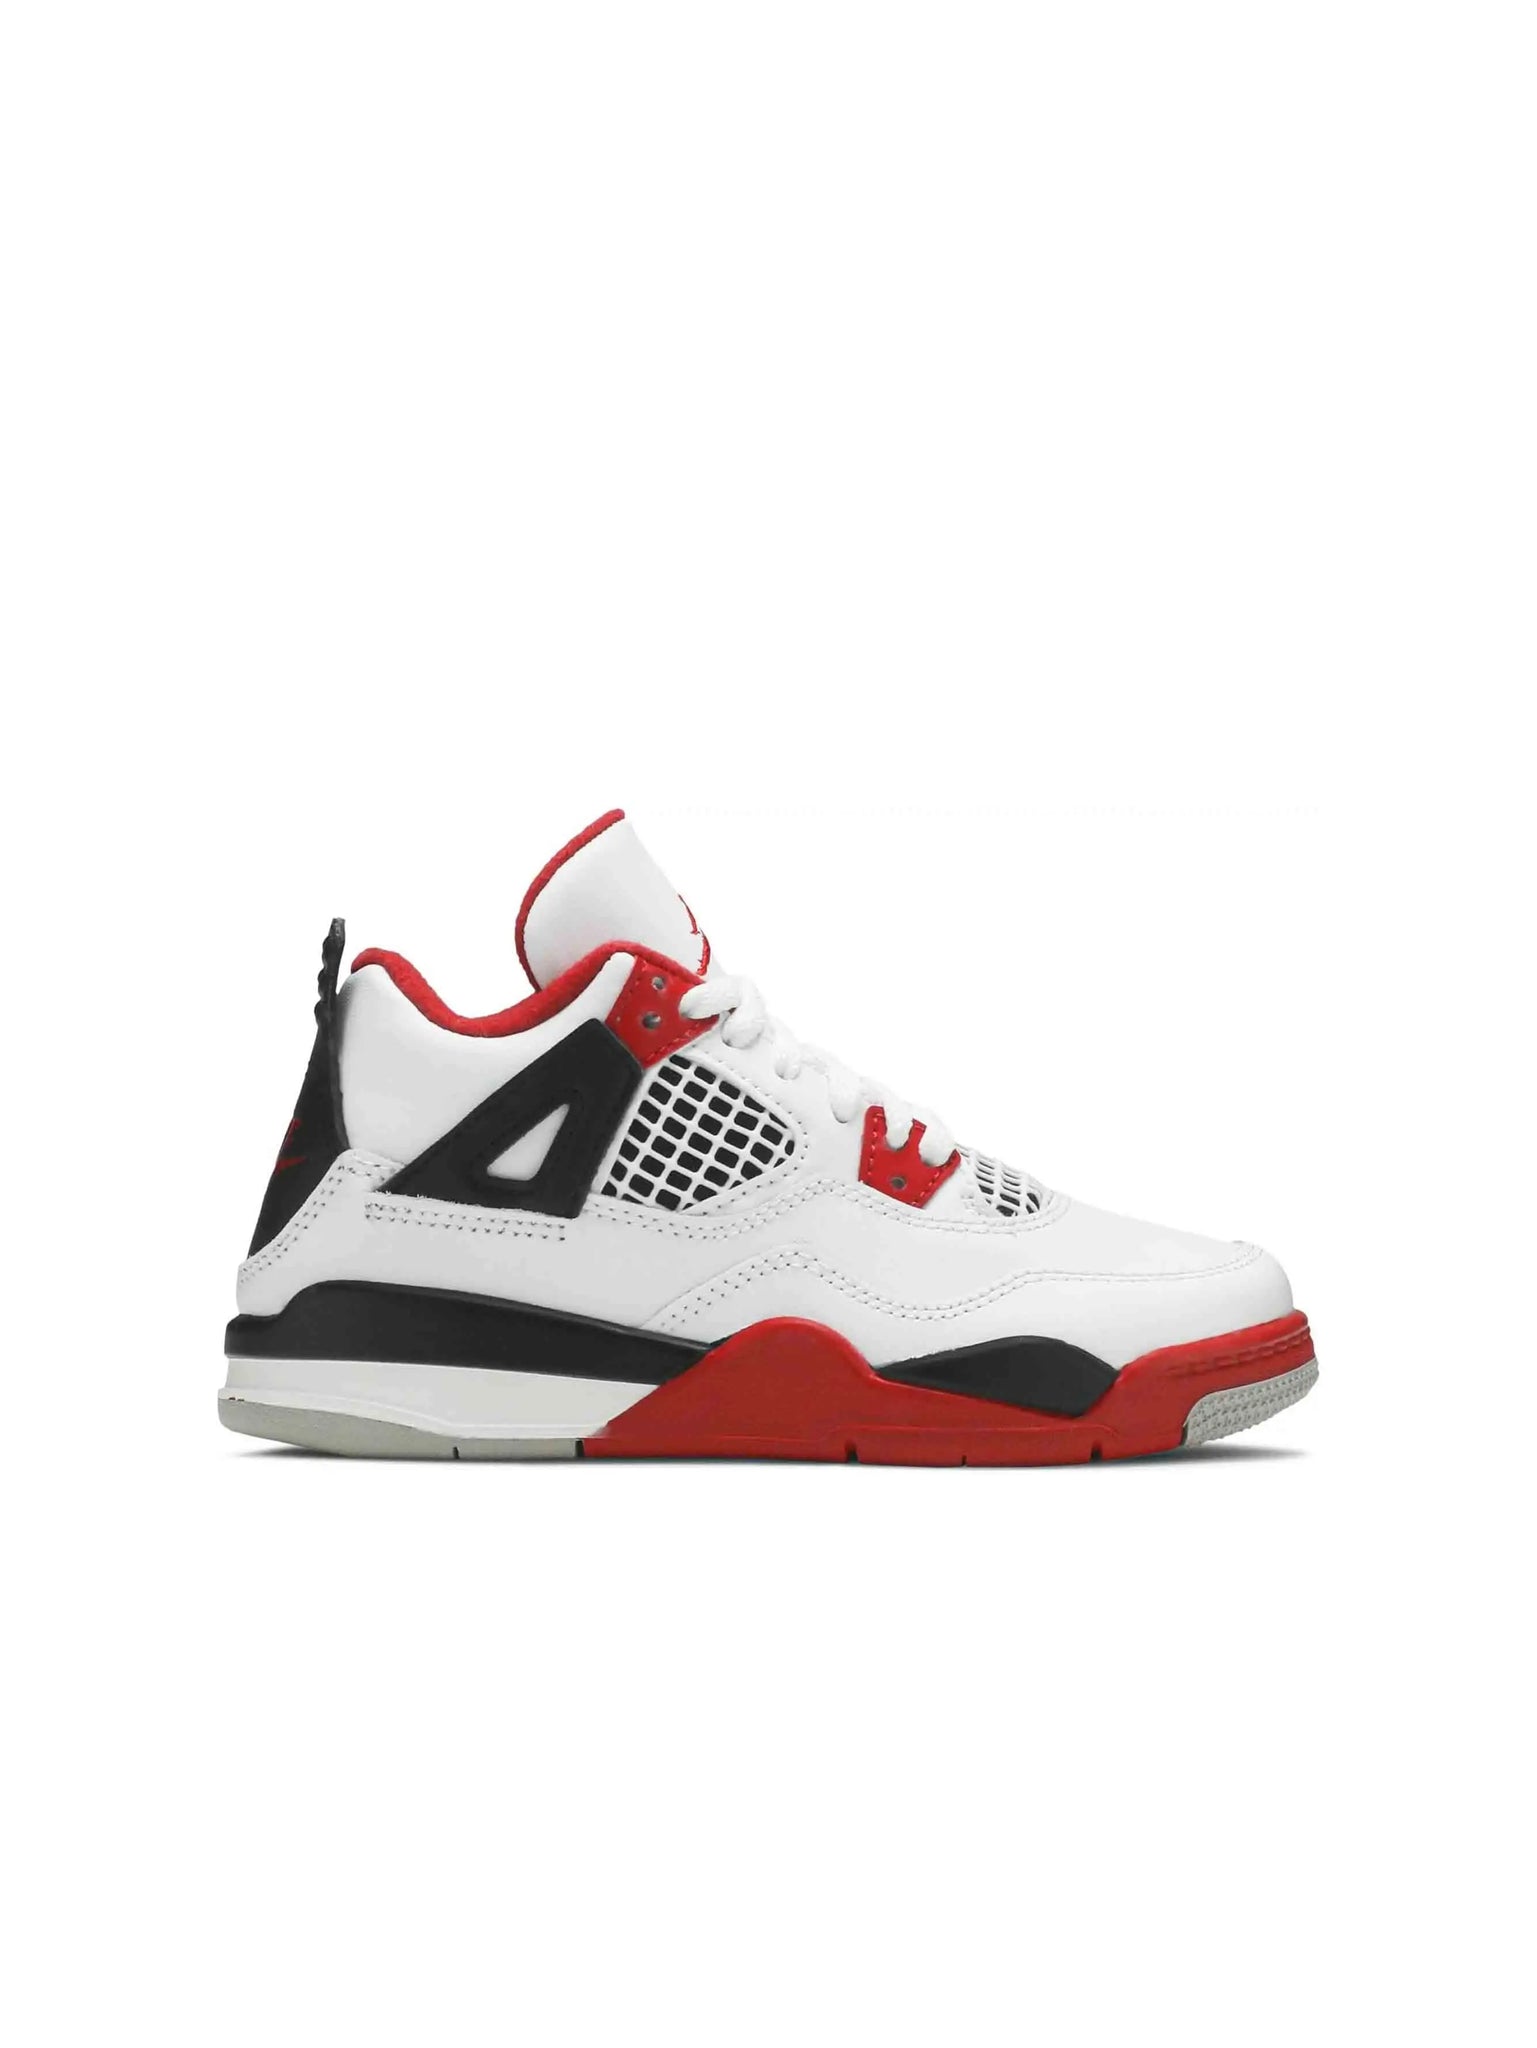 Nike Air Jordan 4 Retro Fire Red (2020) (PS) Prior